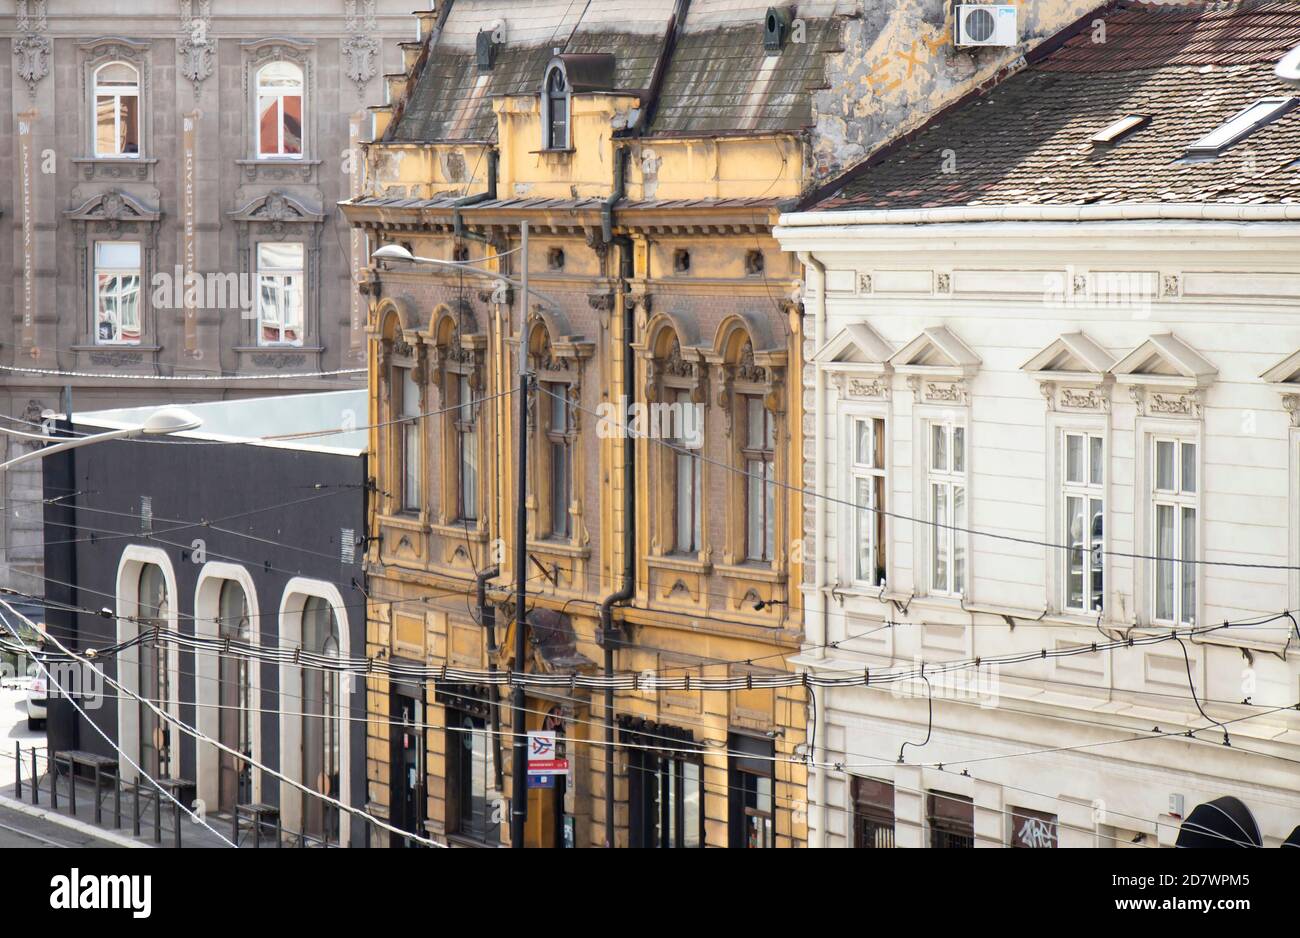 Belgrad, Serbien - 09. Oktober 2020: Neoklassizistische und sezessionistische Architekturhäuser in der Karadjordjeva Straße, mit elektrischen Straßenbahnkabeln Stockfoto